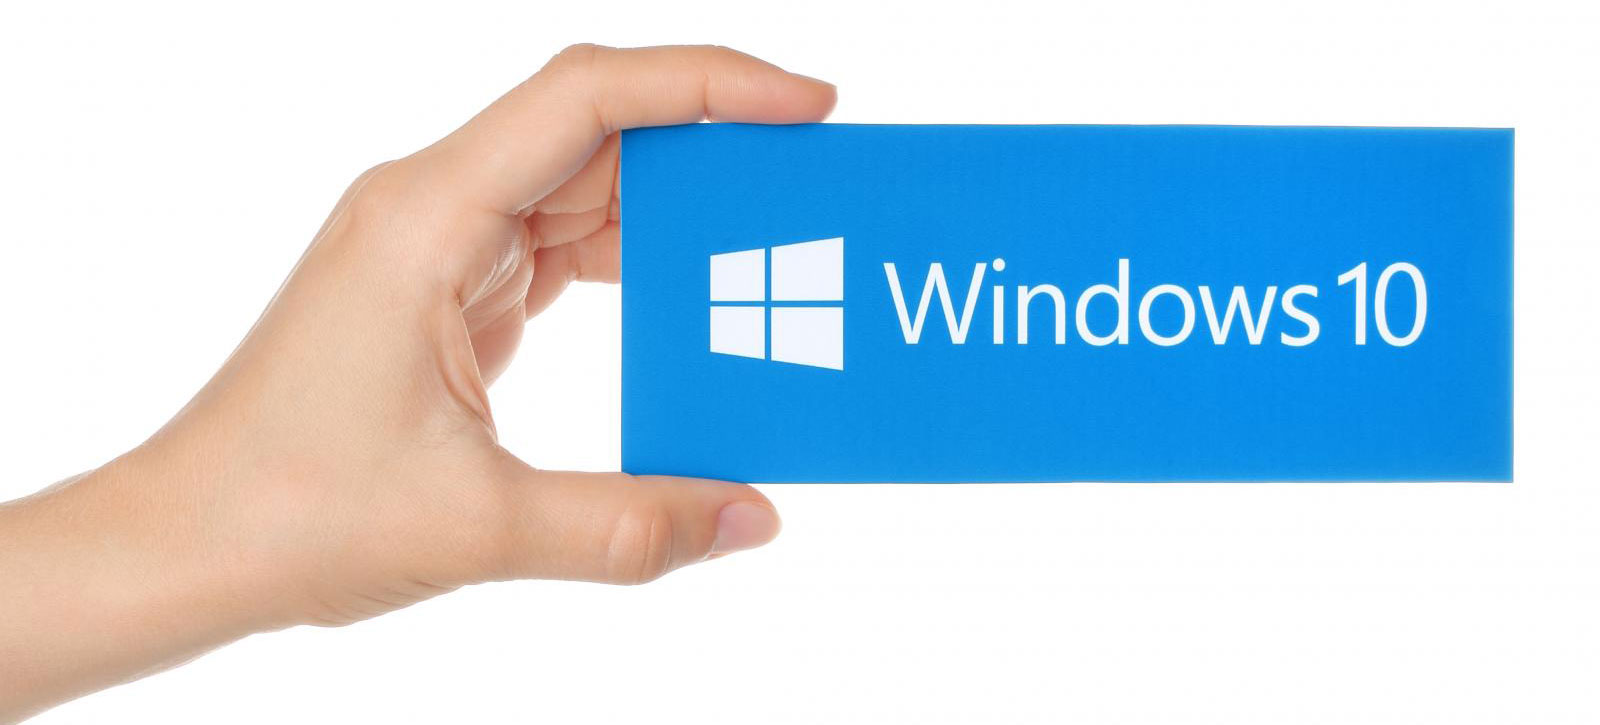 بیلد ۱۰۱۵۸ ویندوز ۱۰ مایکروسافت به صورت رسمی برای گروه fast منتشر شد